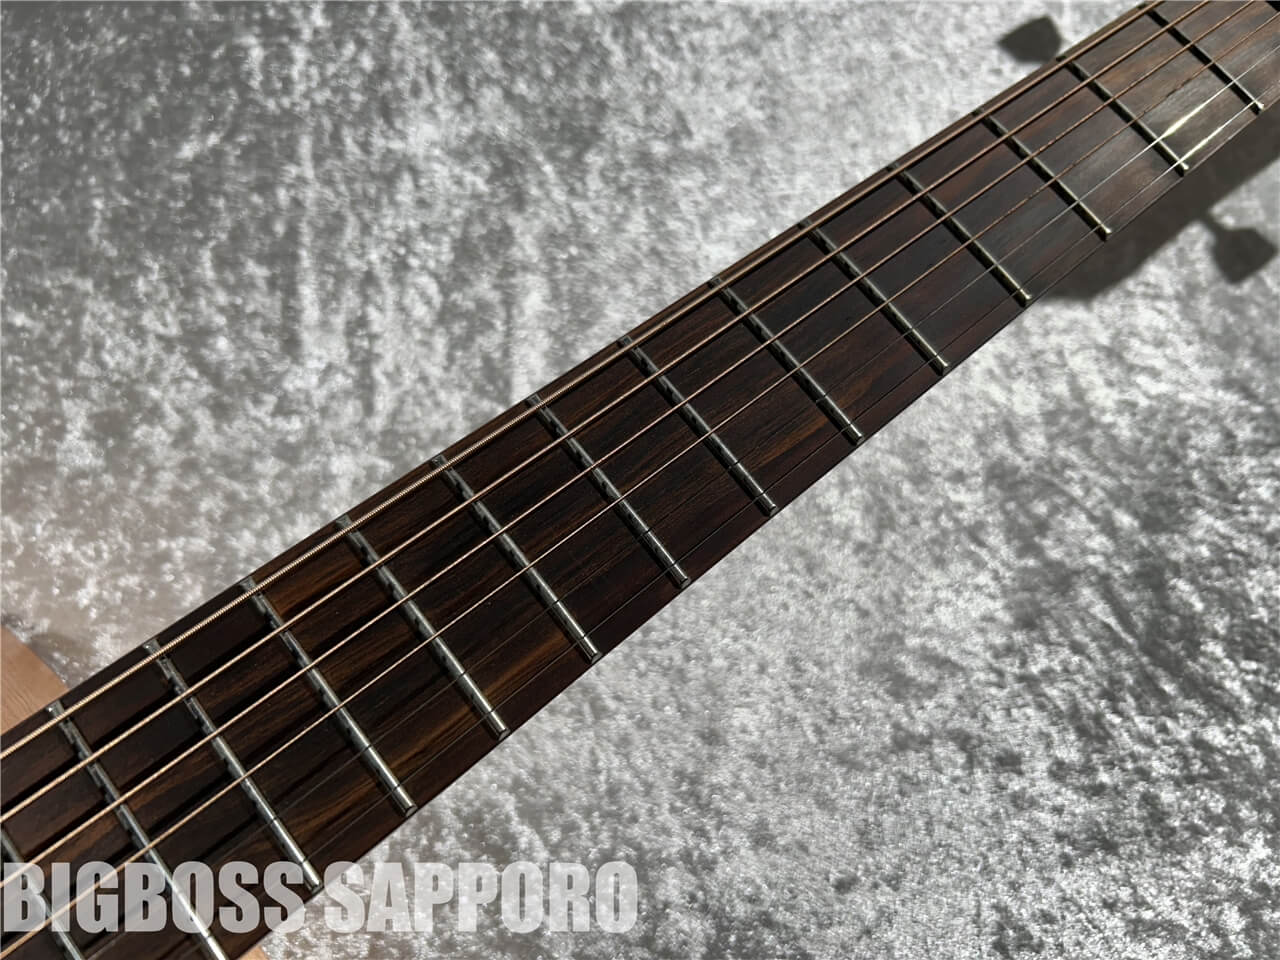 【即納可能】LAG Guitars(ラグギターズ) T70D-NAT 札幌店